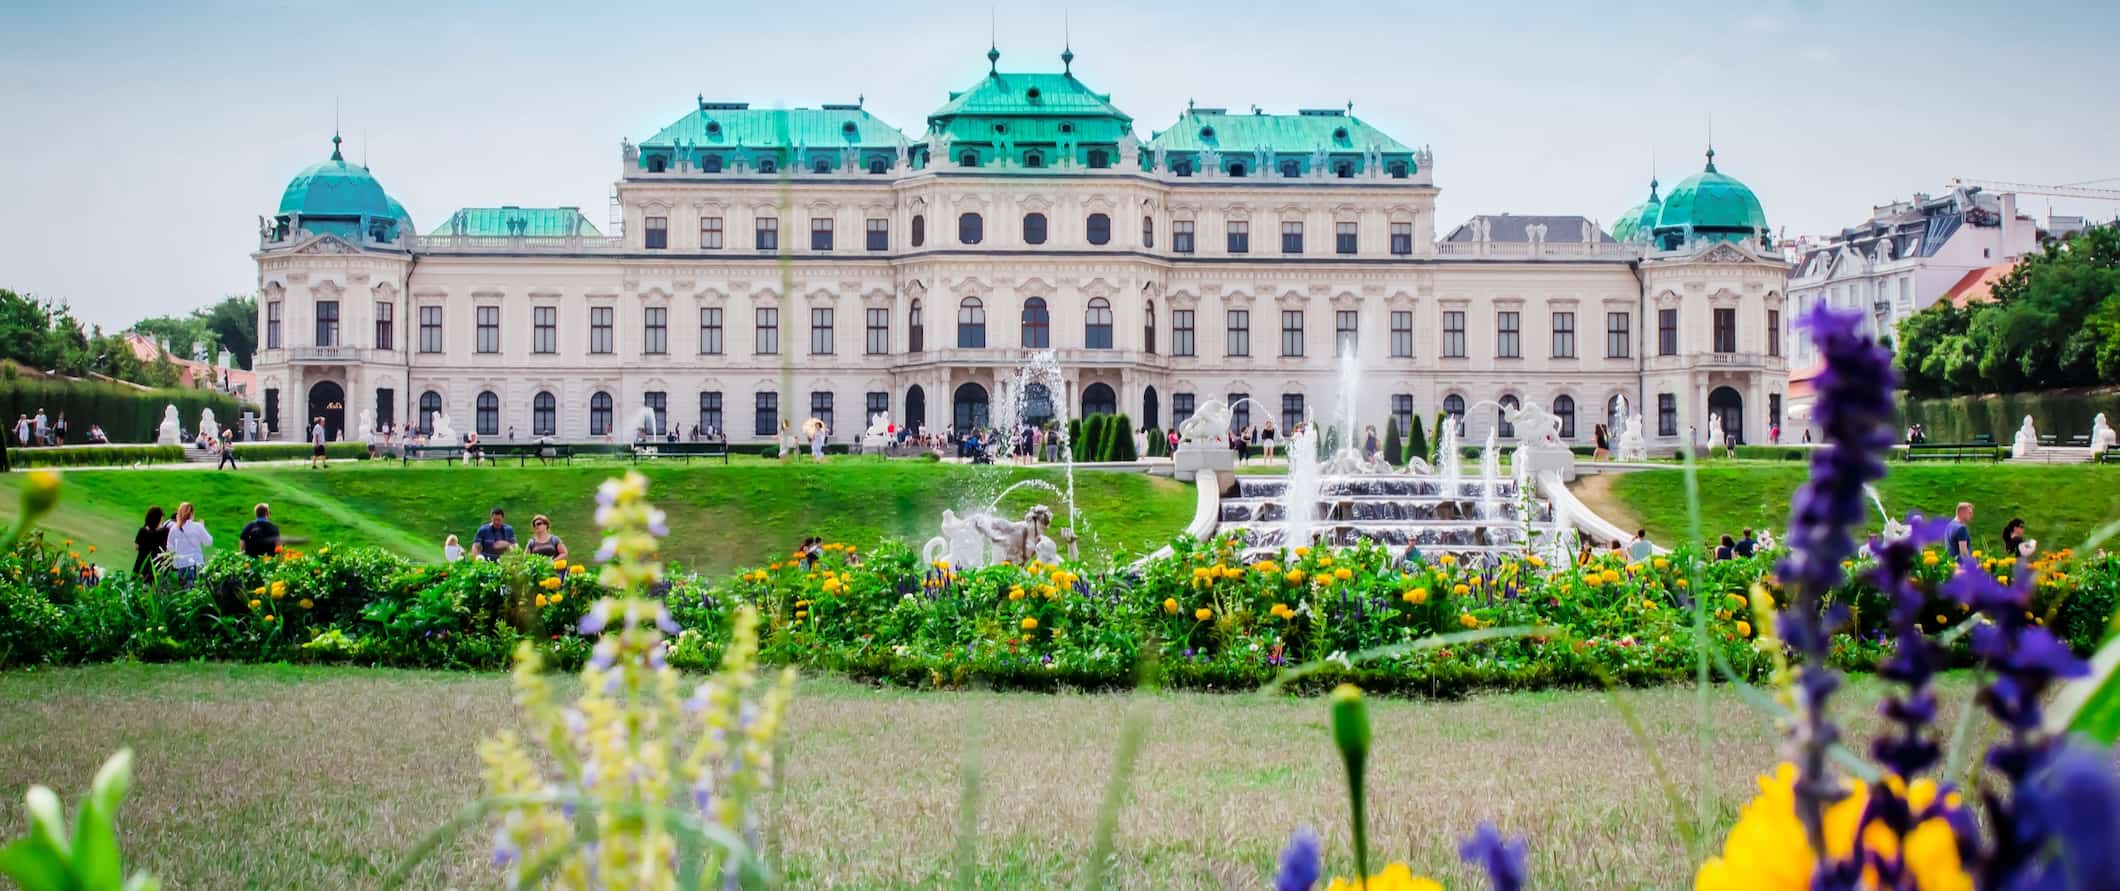 Palácio icônico e histórico de Belvedere em Viena, Áustria